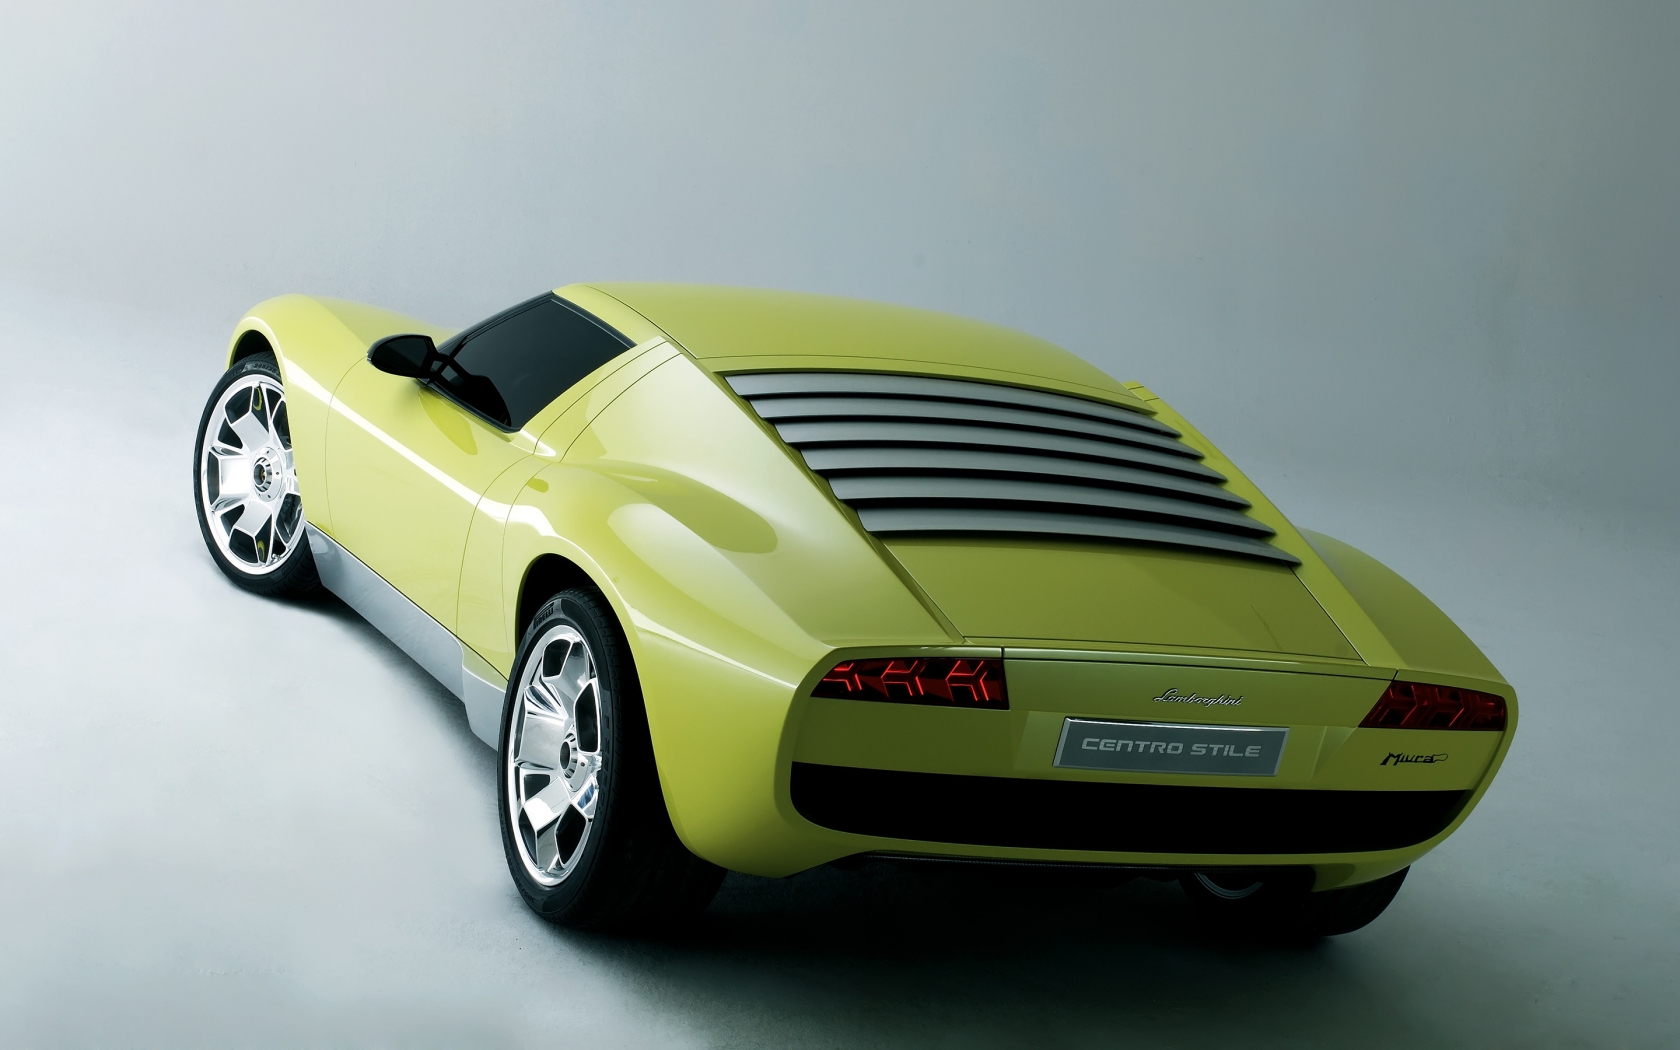 Lamborghini Miura Concept Rear for 1680 x 1050 widescreen resolution